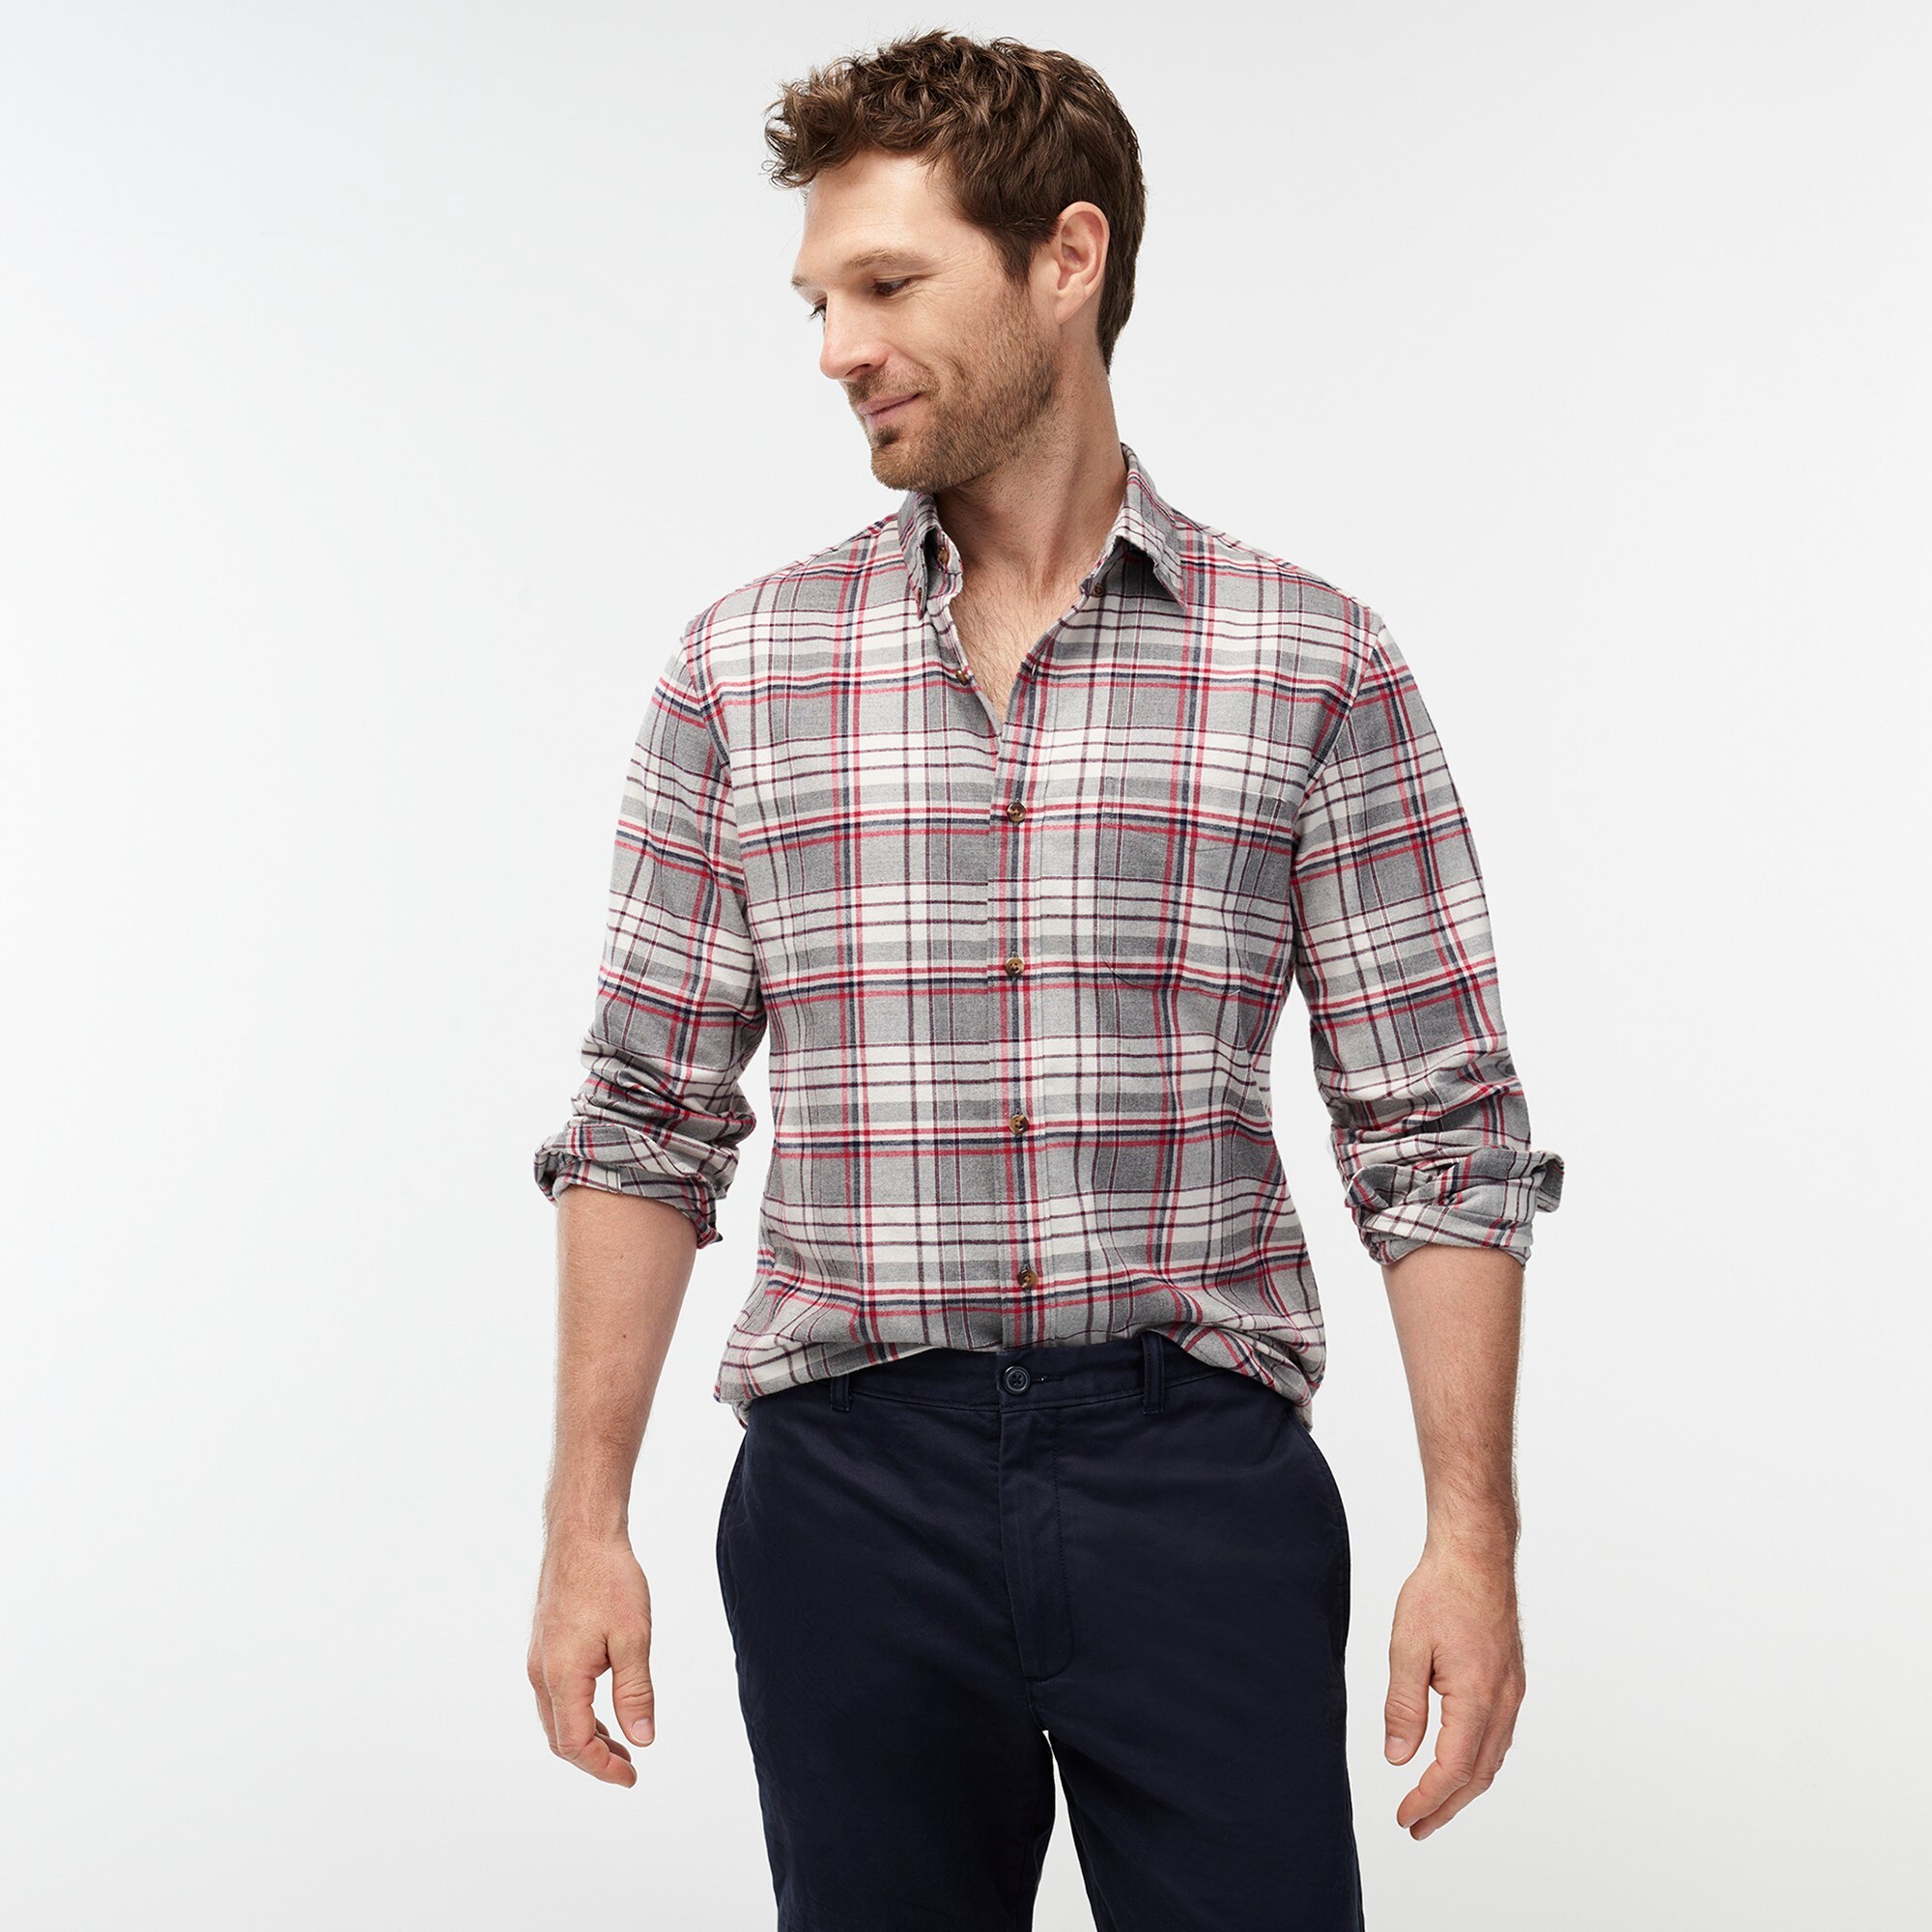 Men's Shirts, Jeans, Shoes & More : Men's New Arrivals | J.Crew